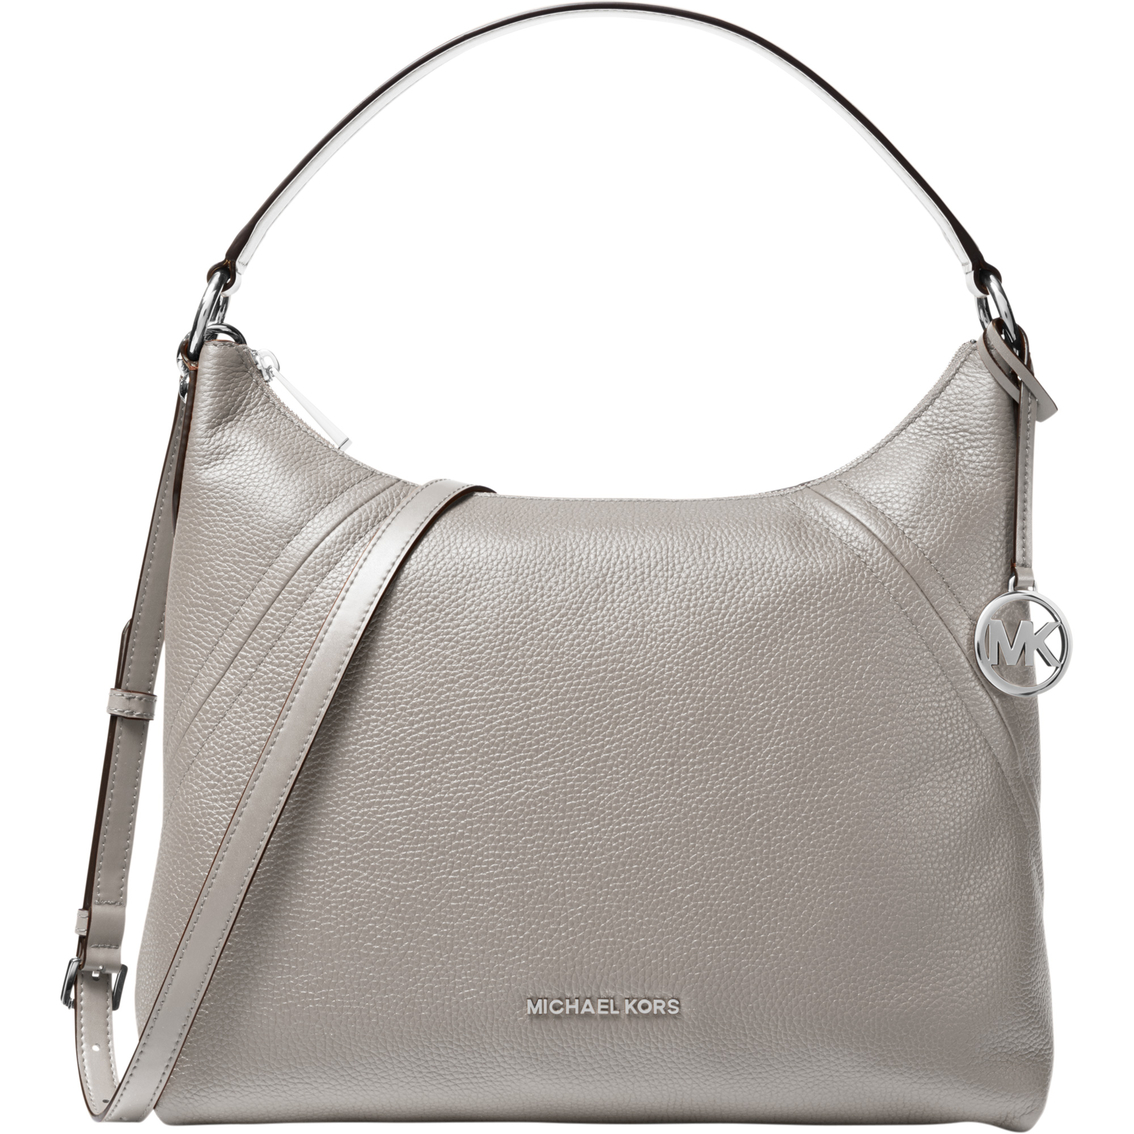 Michael Kors Aria Large Pebble Leather Shoulder Bag | Shoulder Bags ...